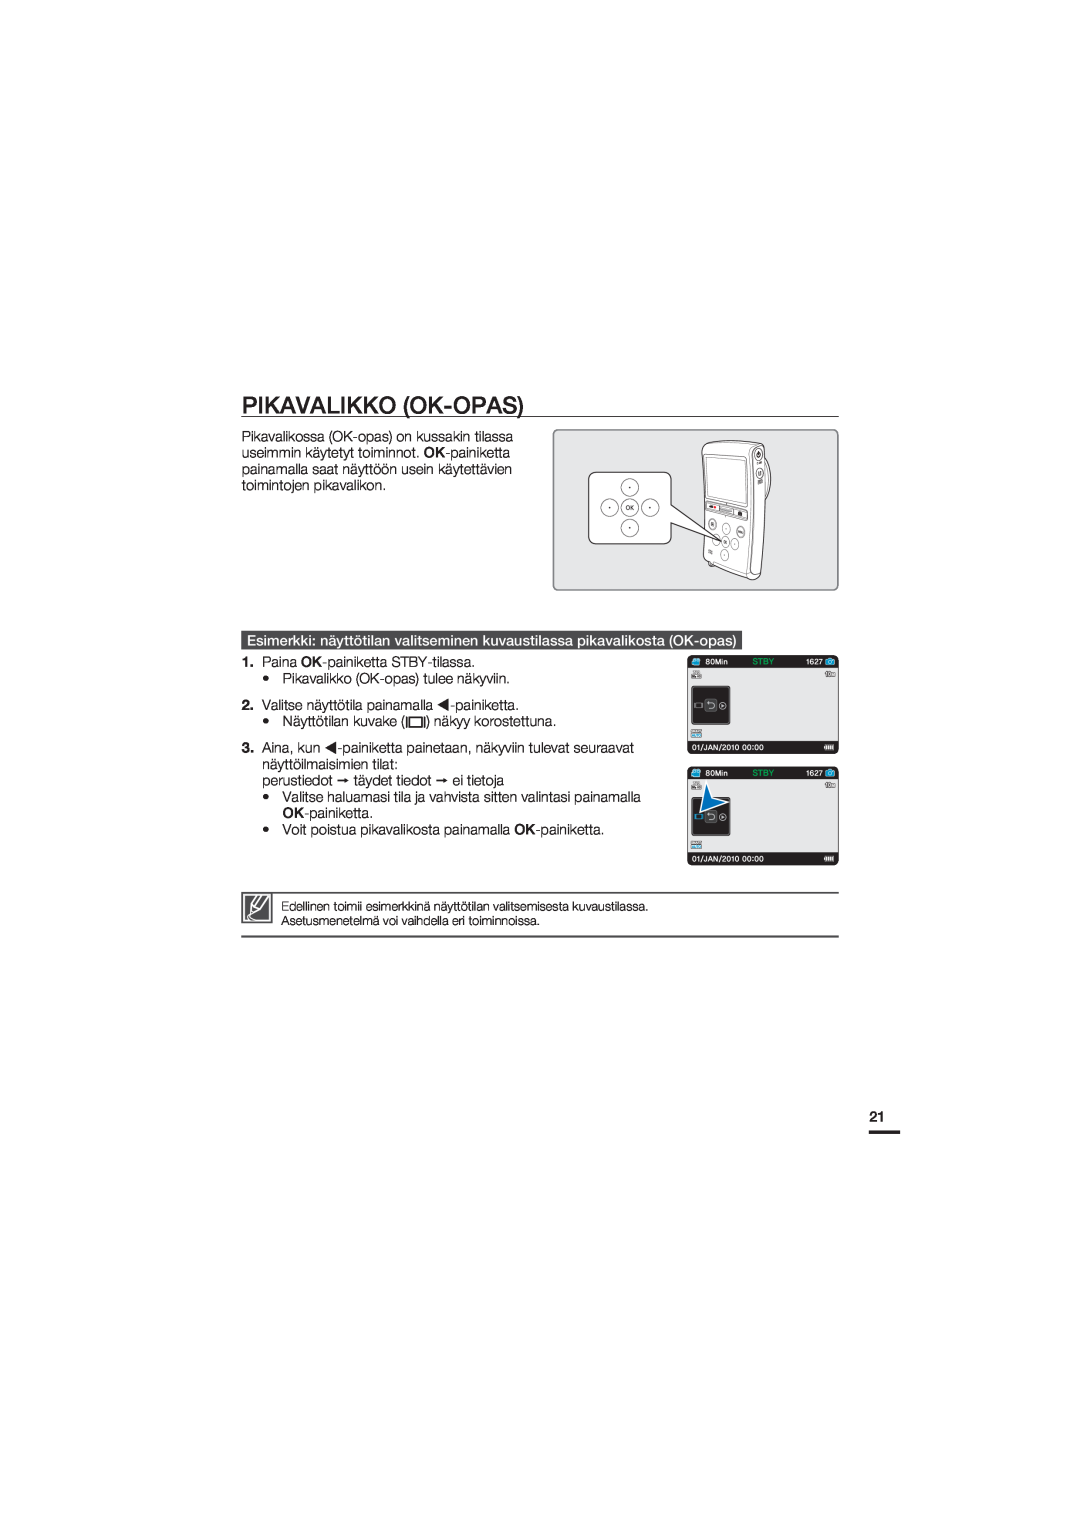 Samsung HMX-U20BP/EDC manual Pikavalikko Ok-Opas 